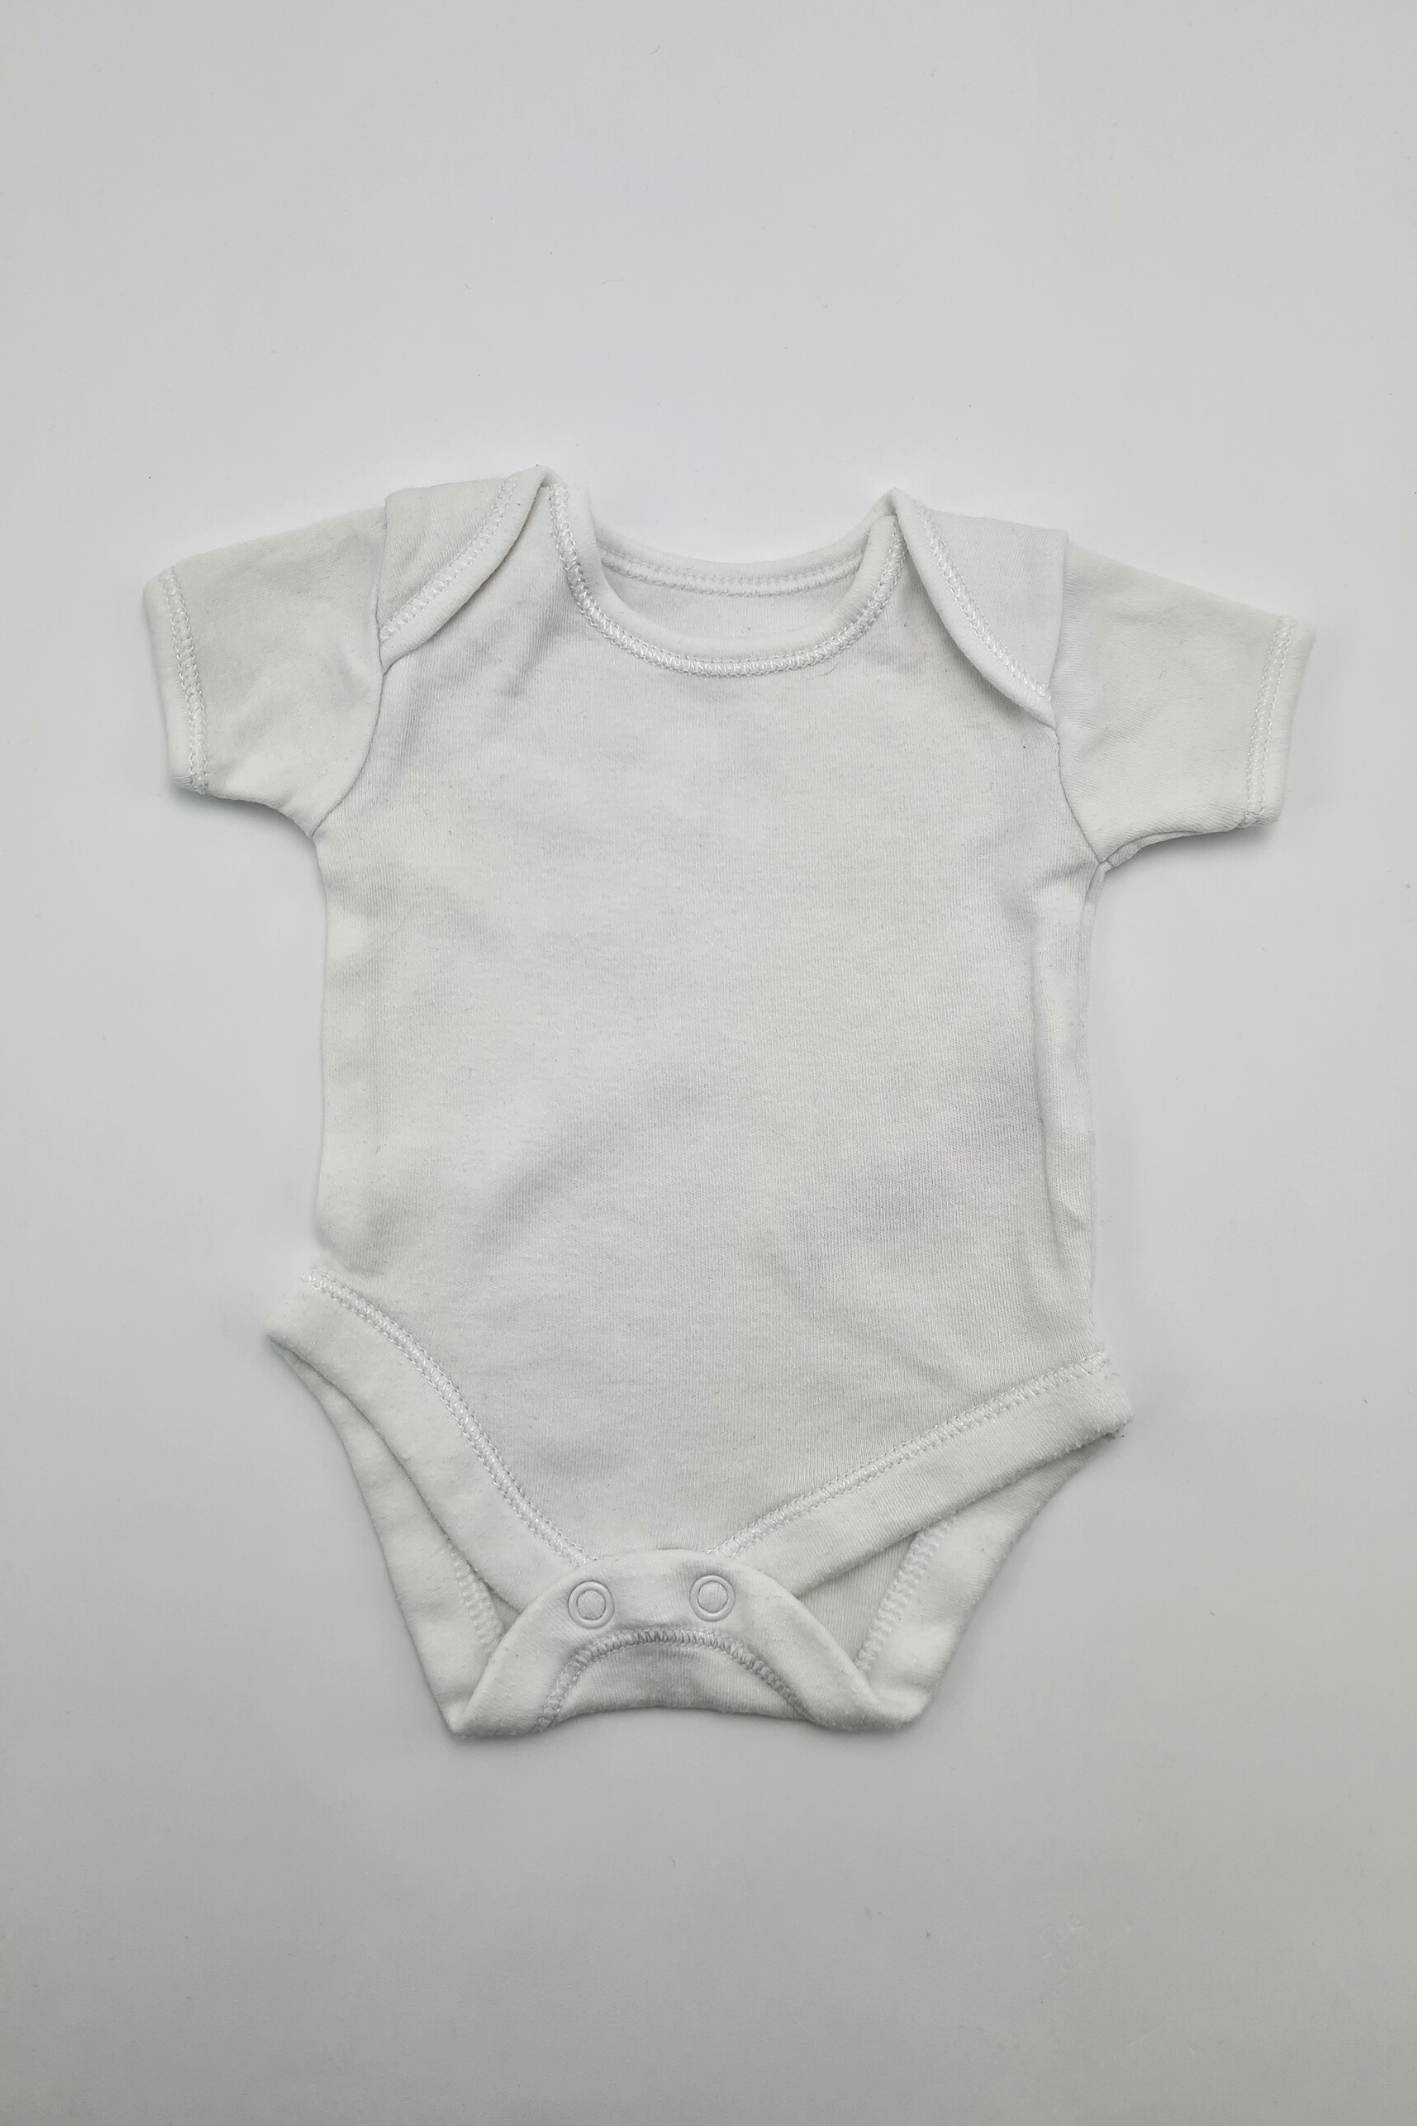 Petit bébé (6 lb) - Body blanc 100 % coton (George)